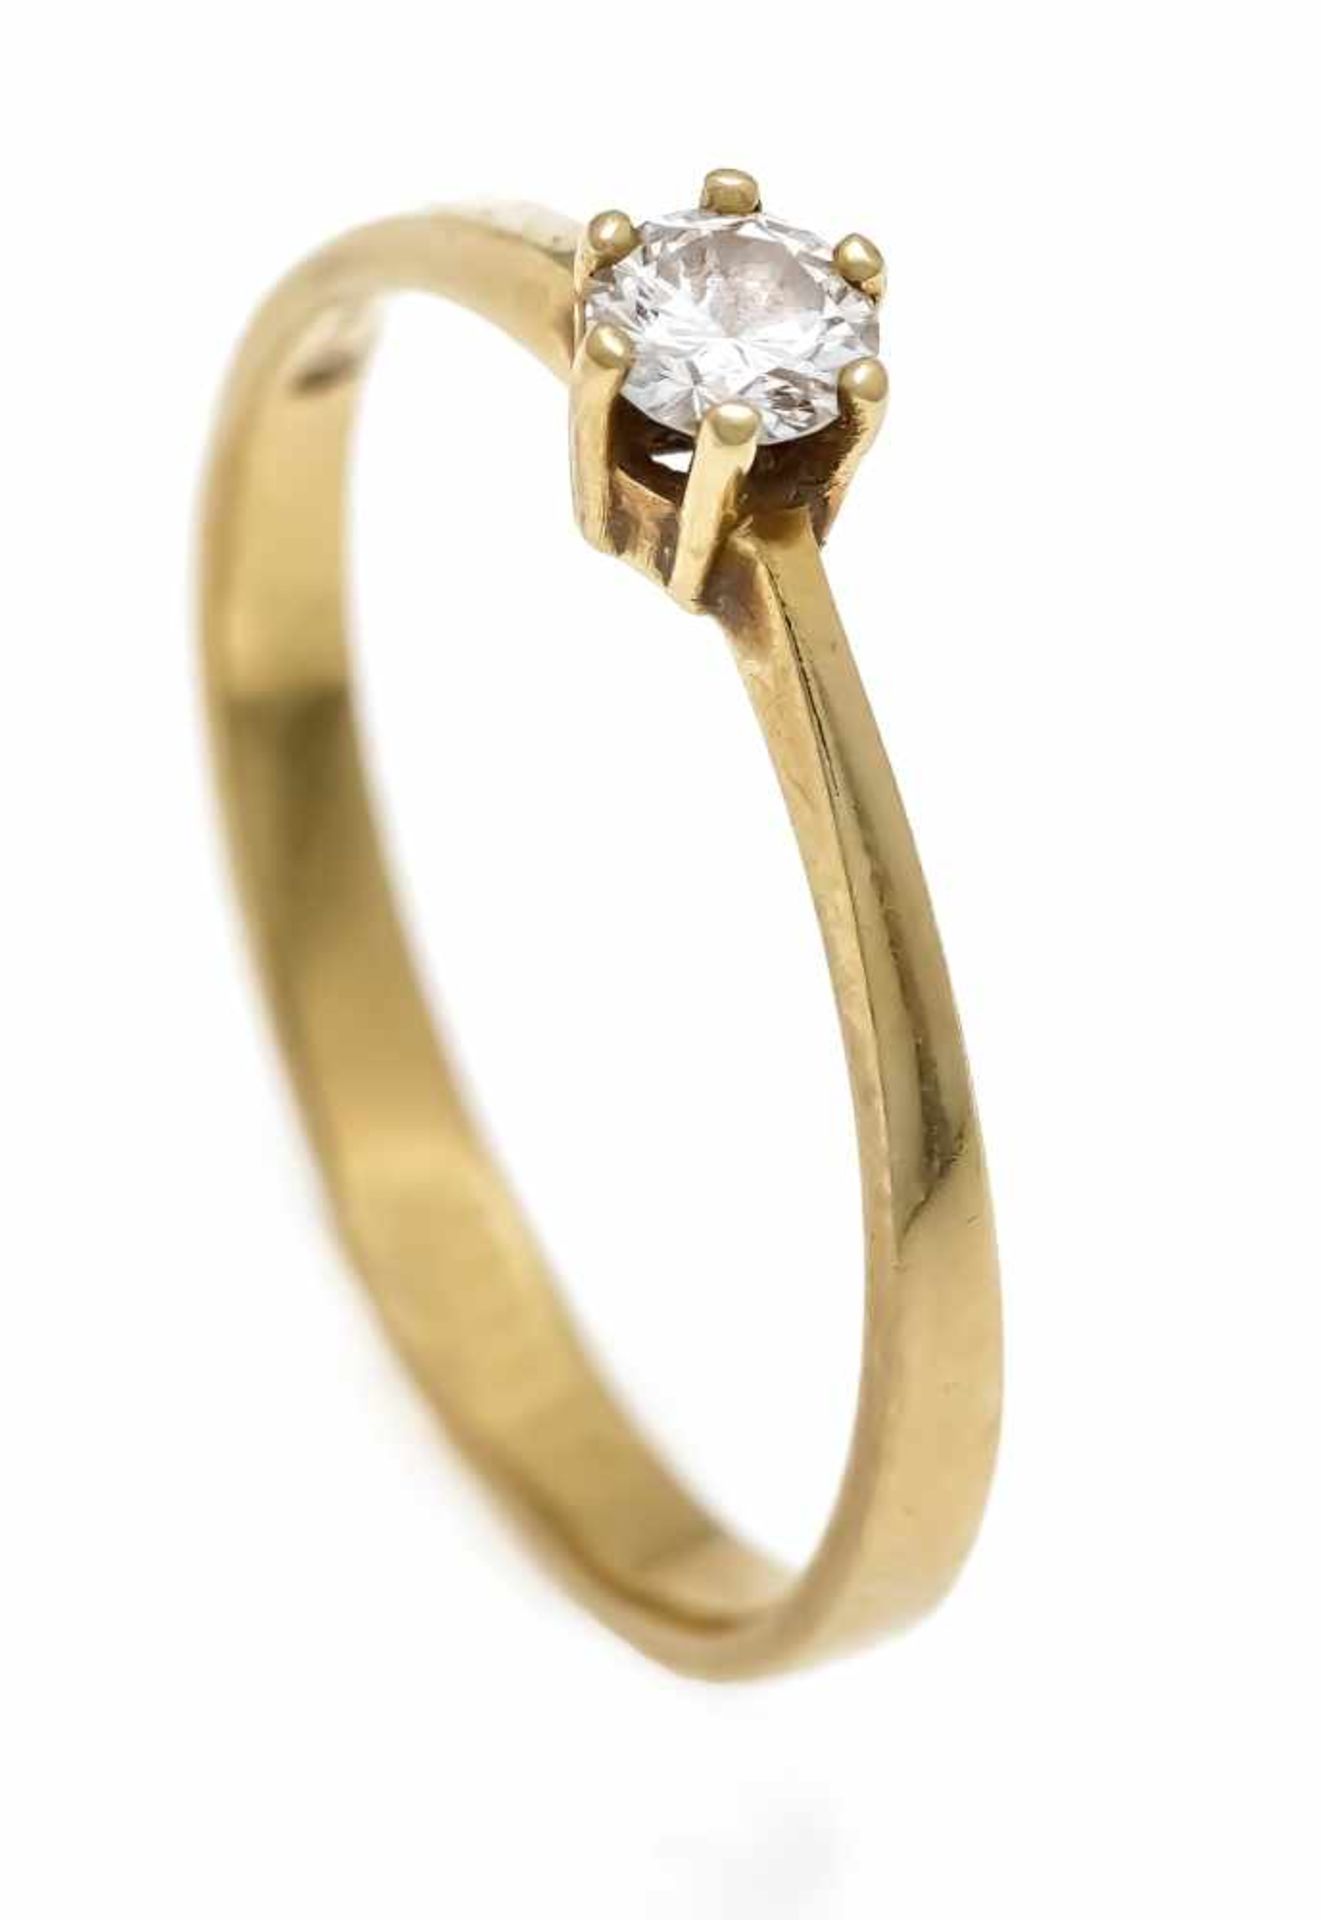 Brillant-Ring GG 585/000 mit einem Brillanten 0,20 ct W/SI, RG 60, 2,2 gBrilliant ring GG 585/000